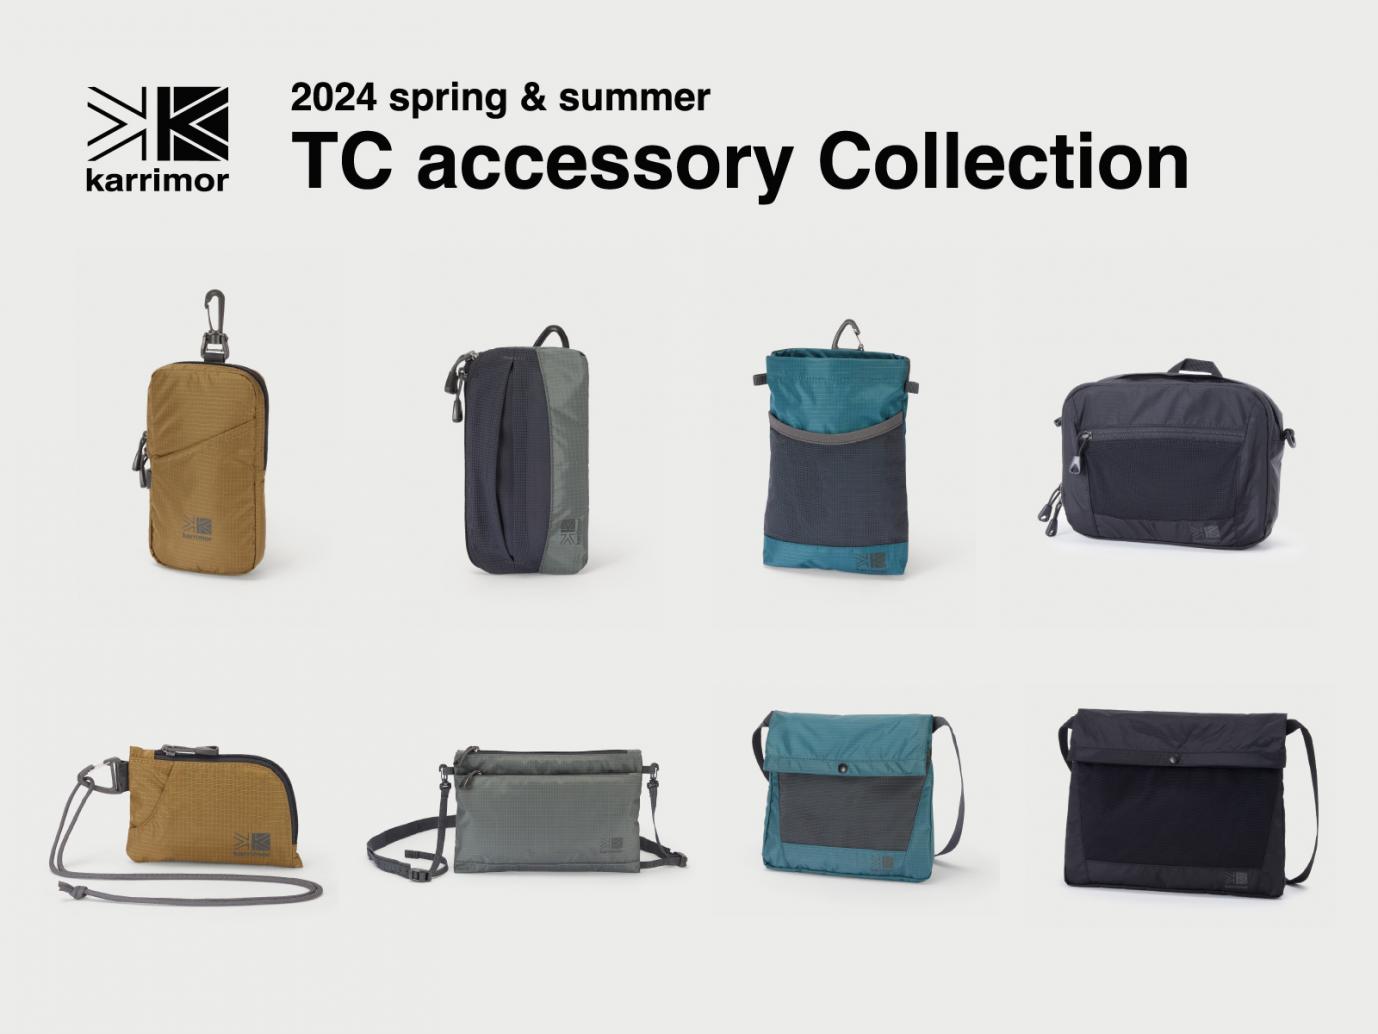 karrimorから、小さなアイテムの収納に優れたTC accessory Collectionの新色を発売開始